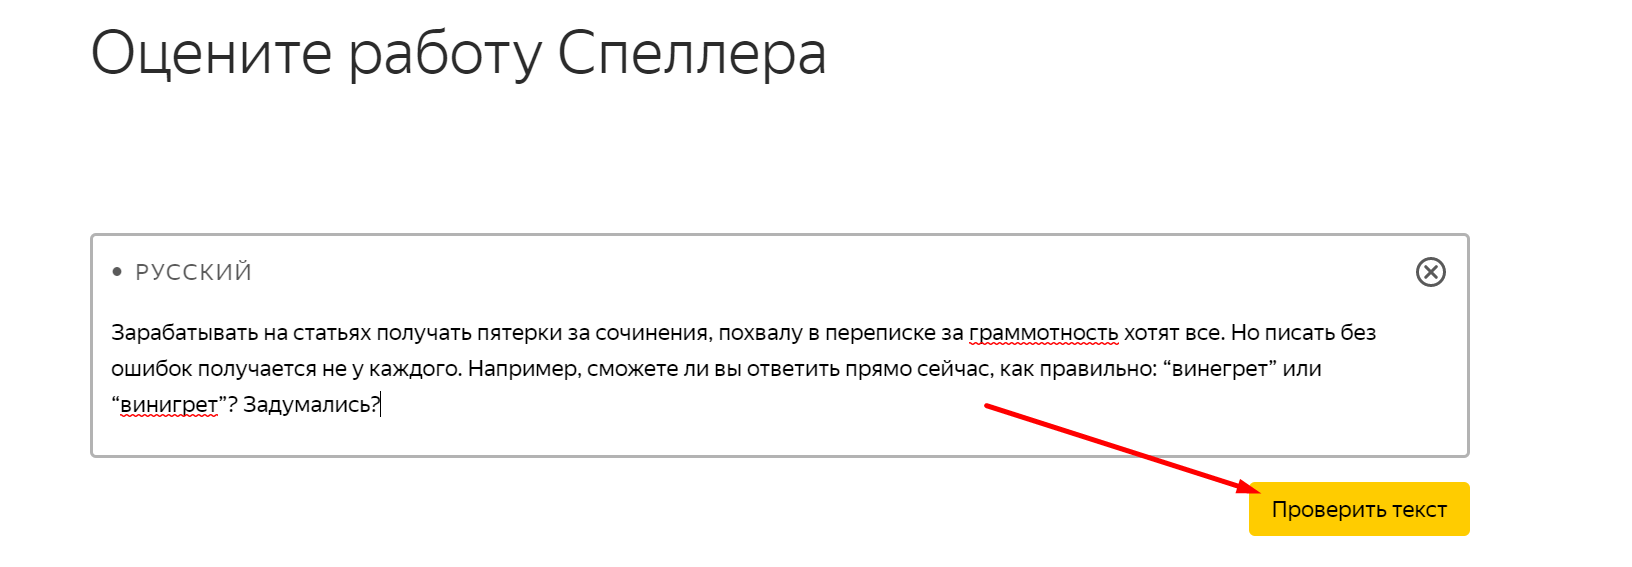 Проверка текста в Яндекс.Спеллере